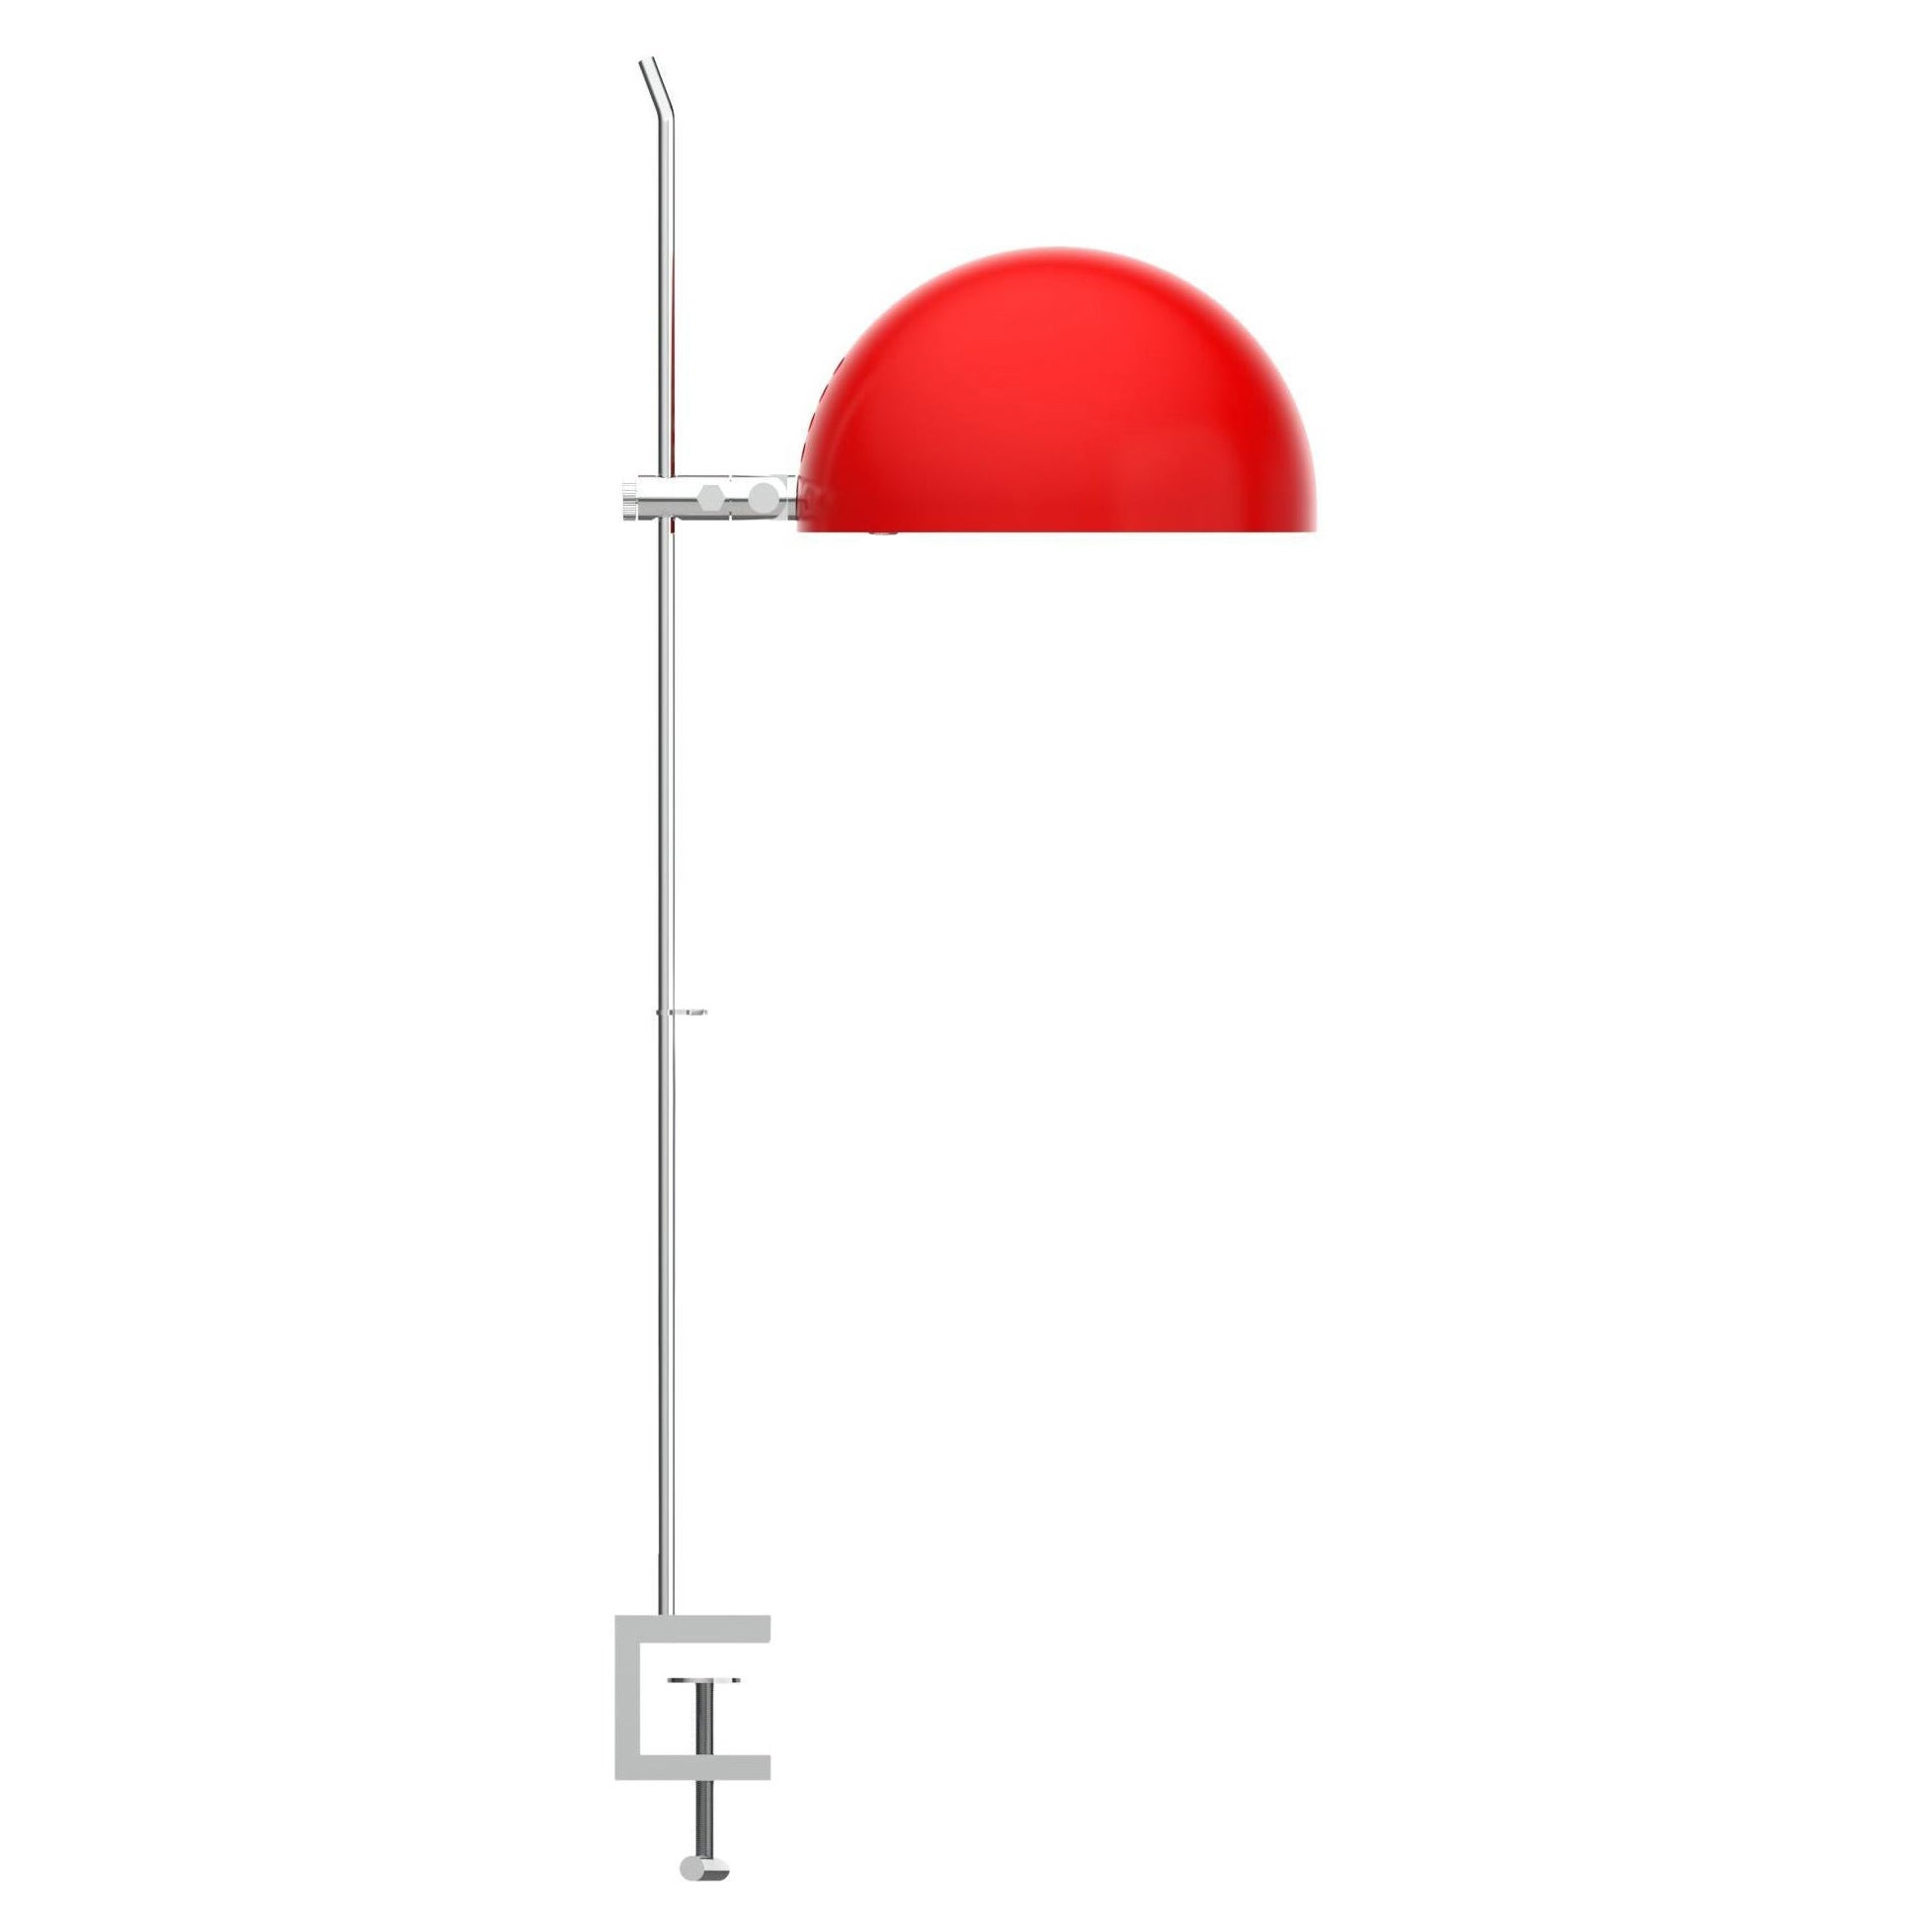 Alain Richard 'A22F' Quastenlampe in Rot für Disderot